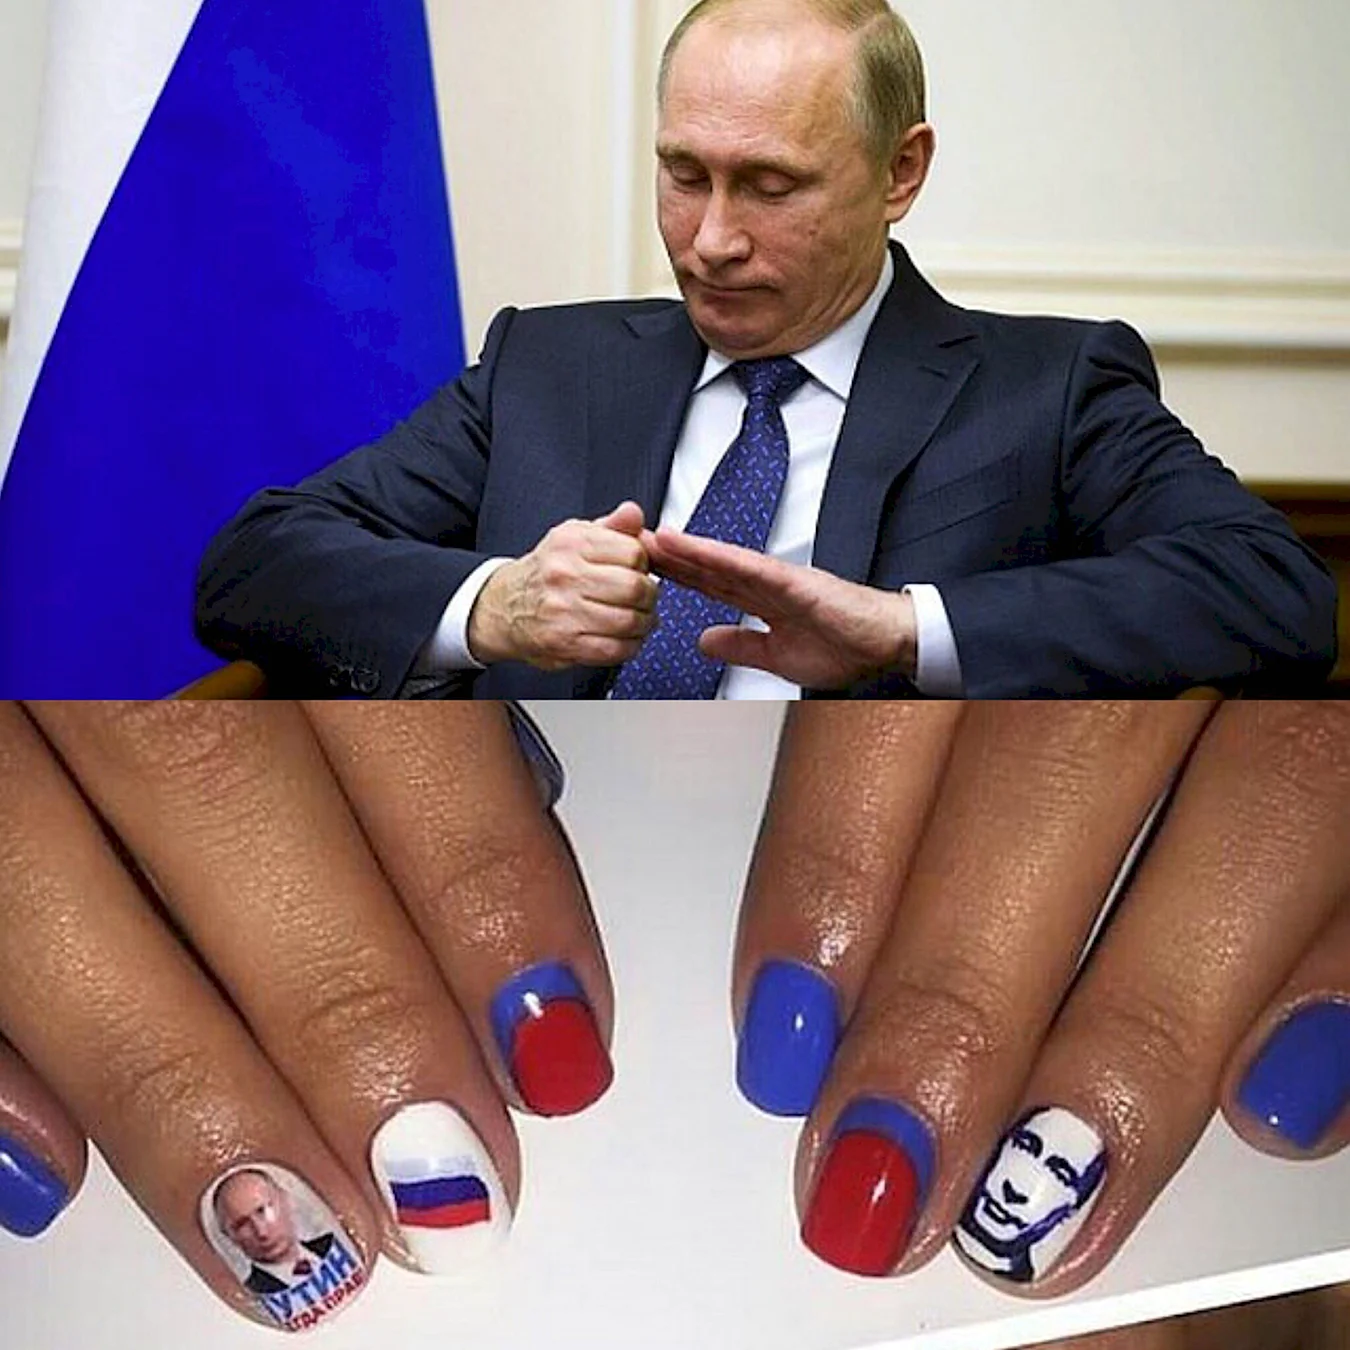 Ногти Путина